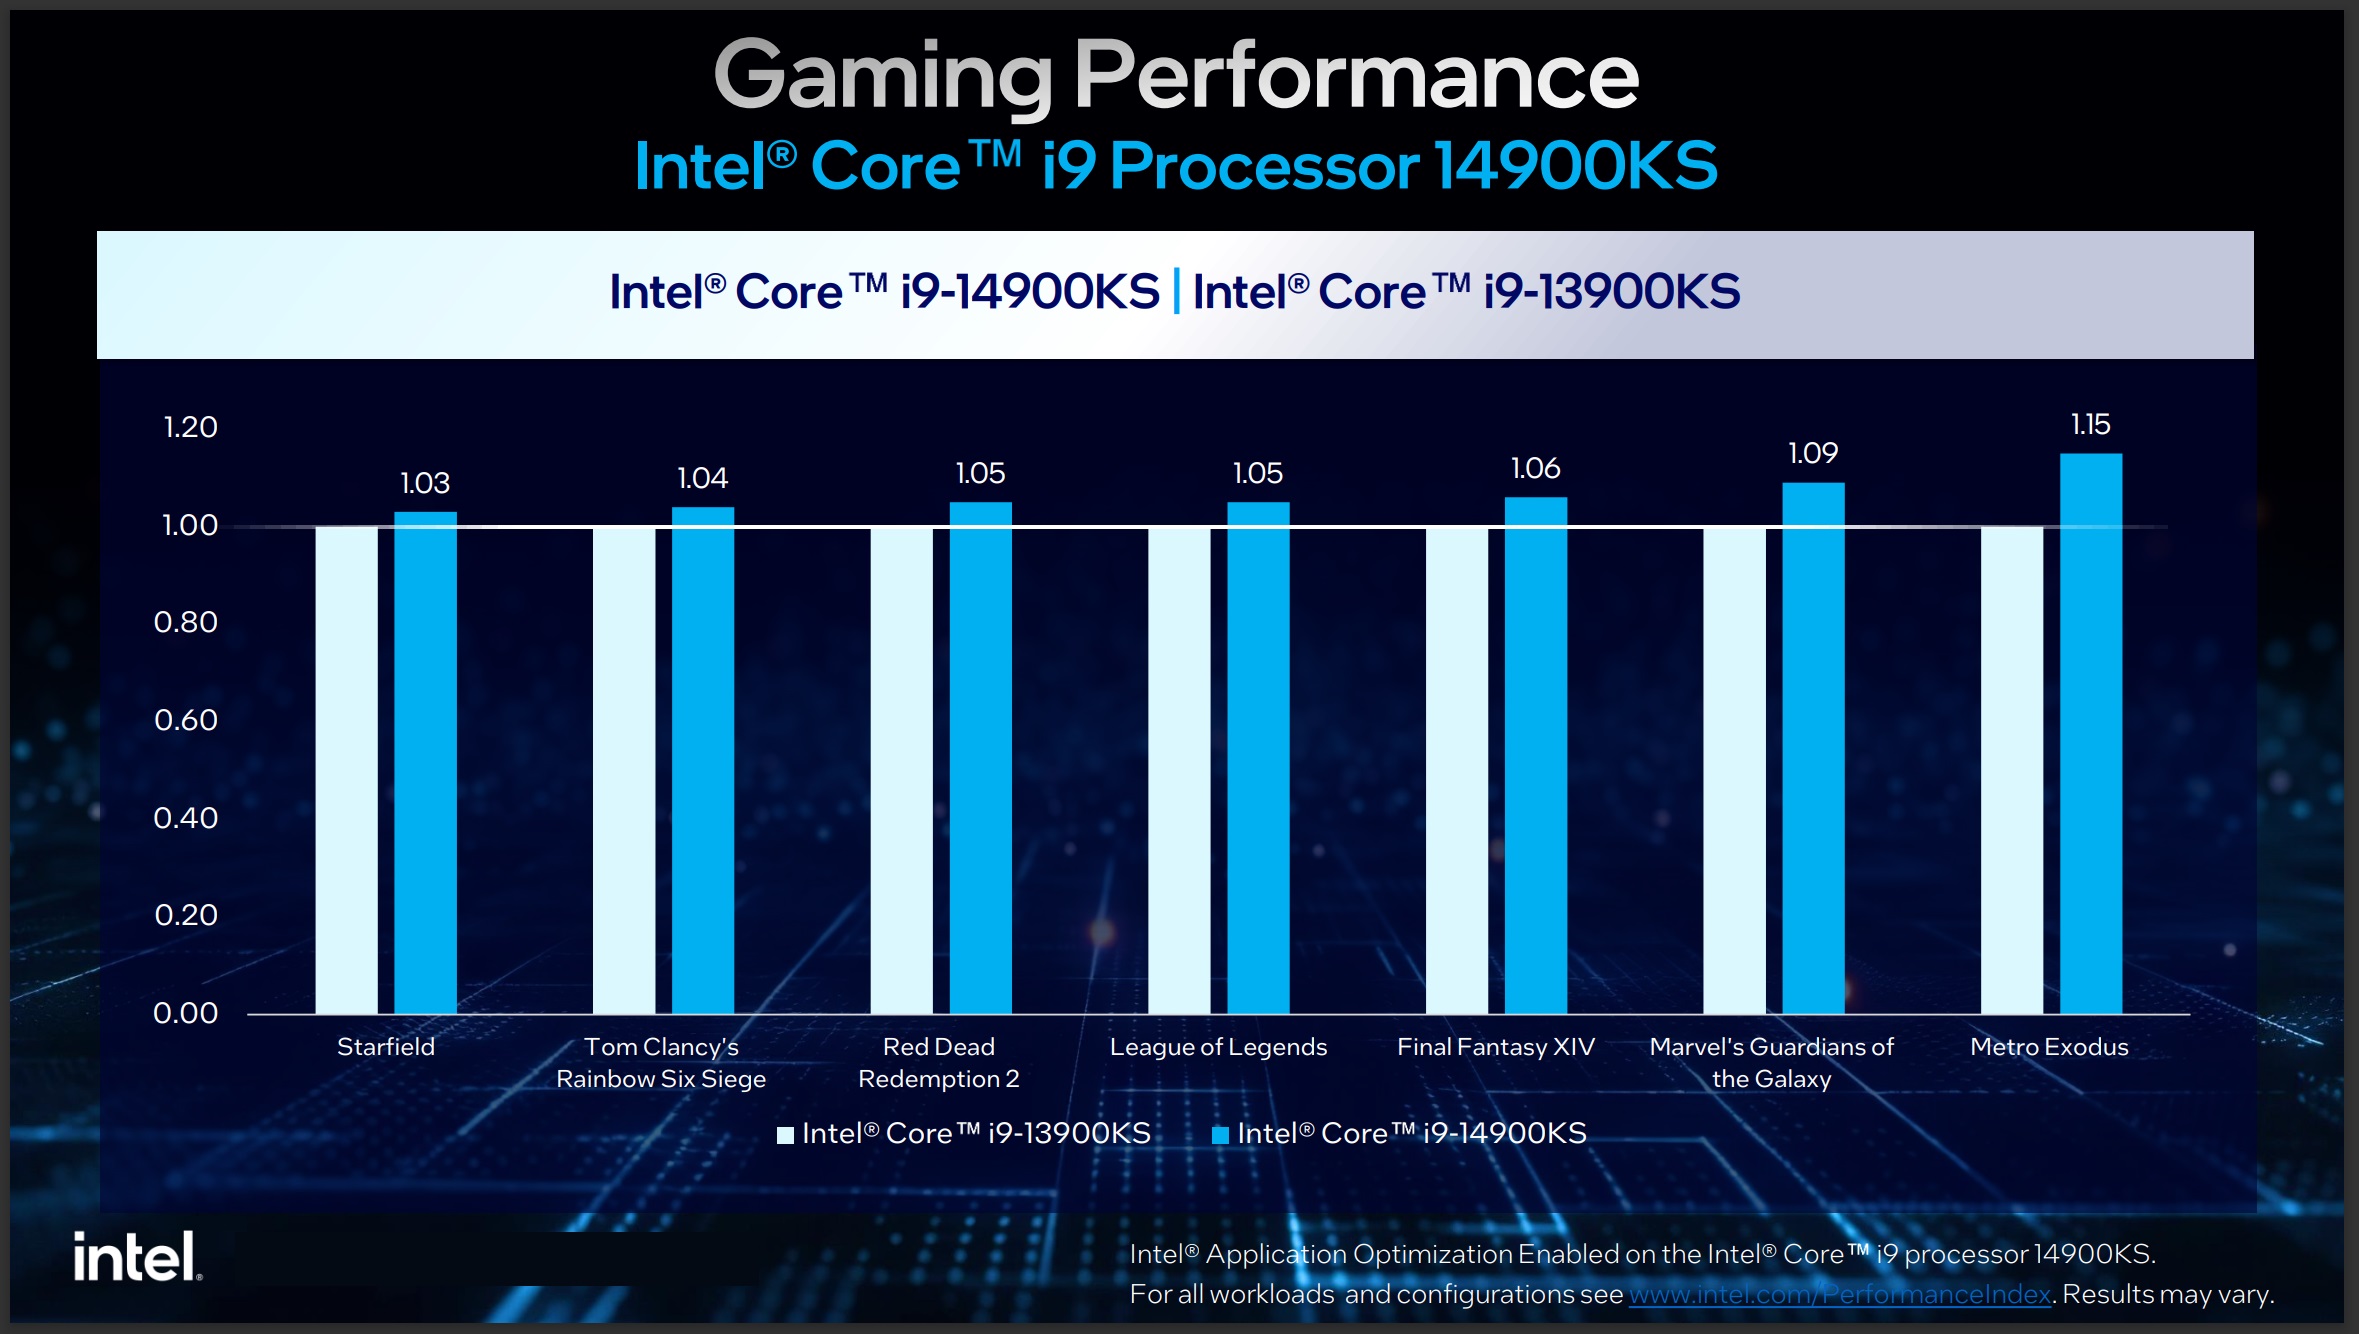 Intel Core i9-14900KS gen over gen gaming